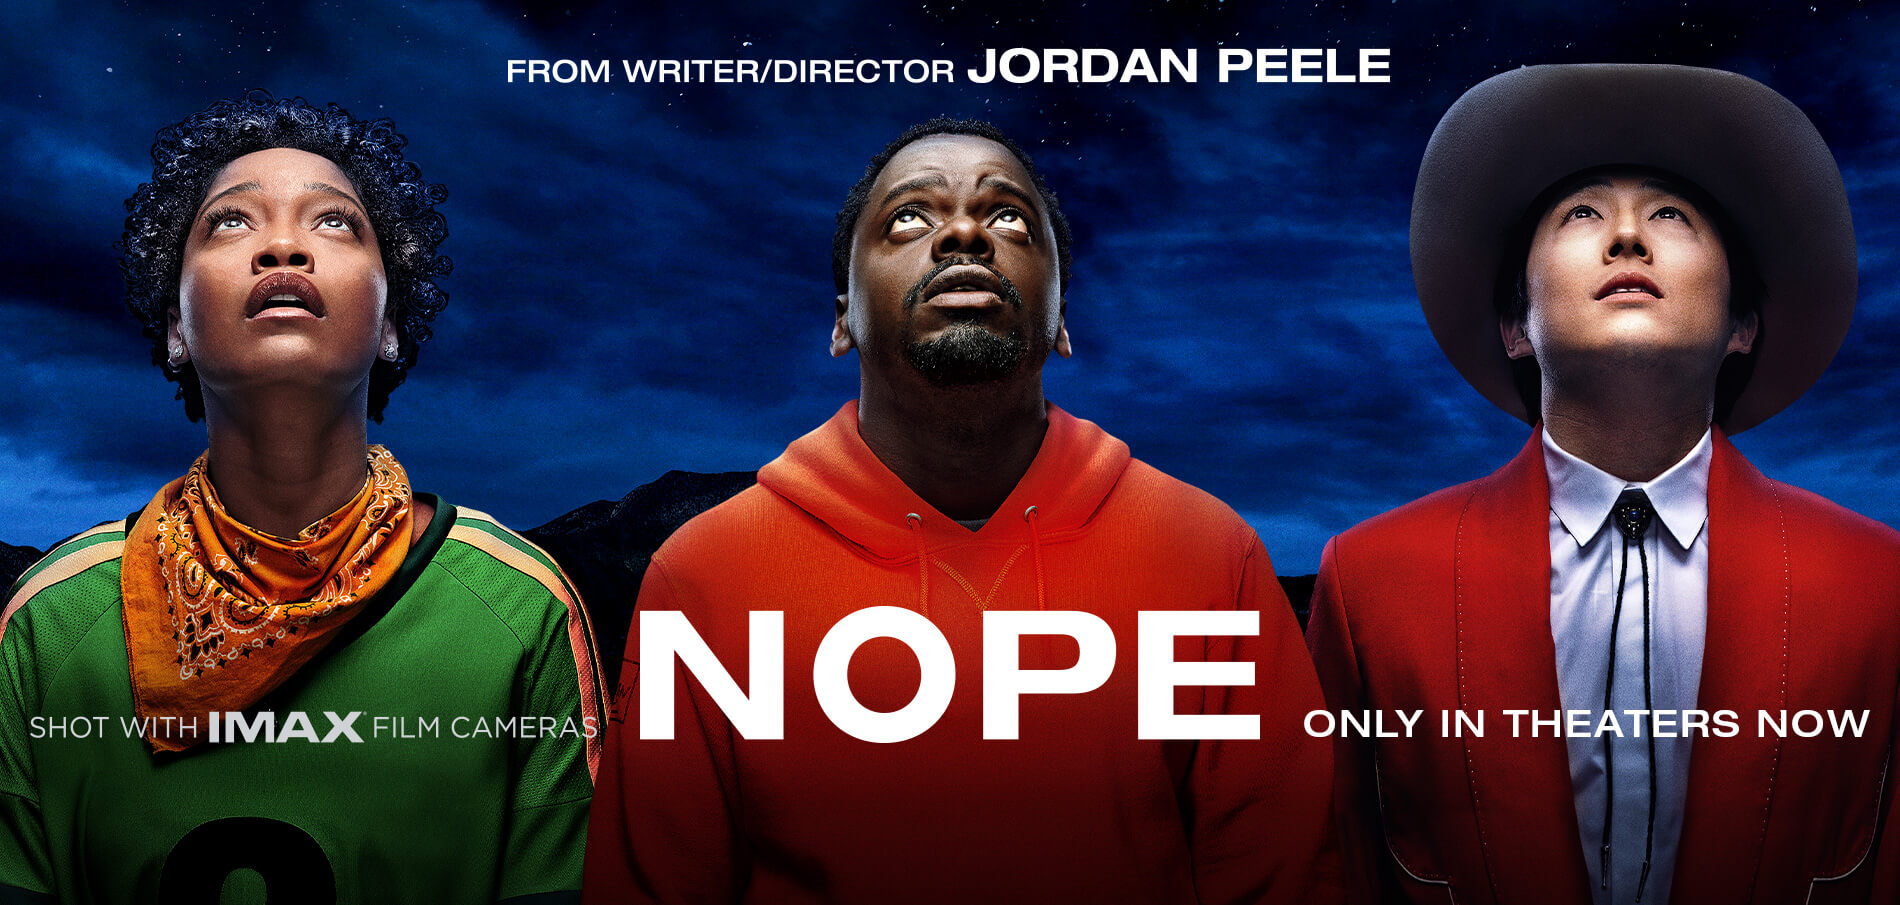 El ganador del Oscar® Jordan Peele interrumpió y redefinió el terror moderno con Get Out y luego Us.